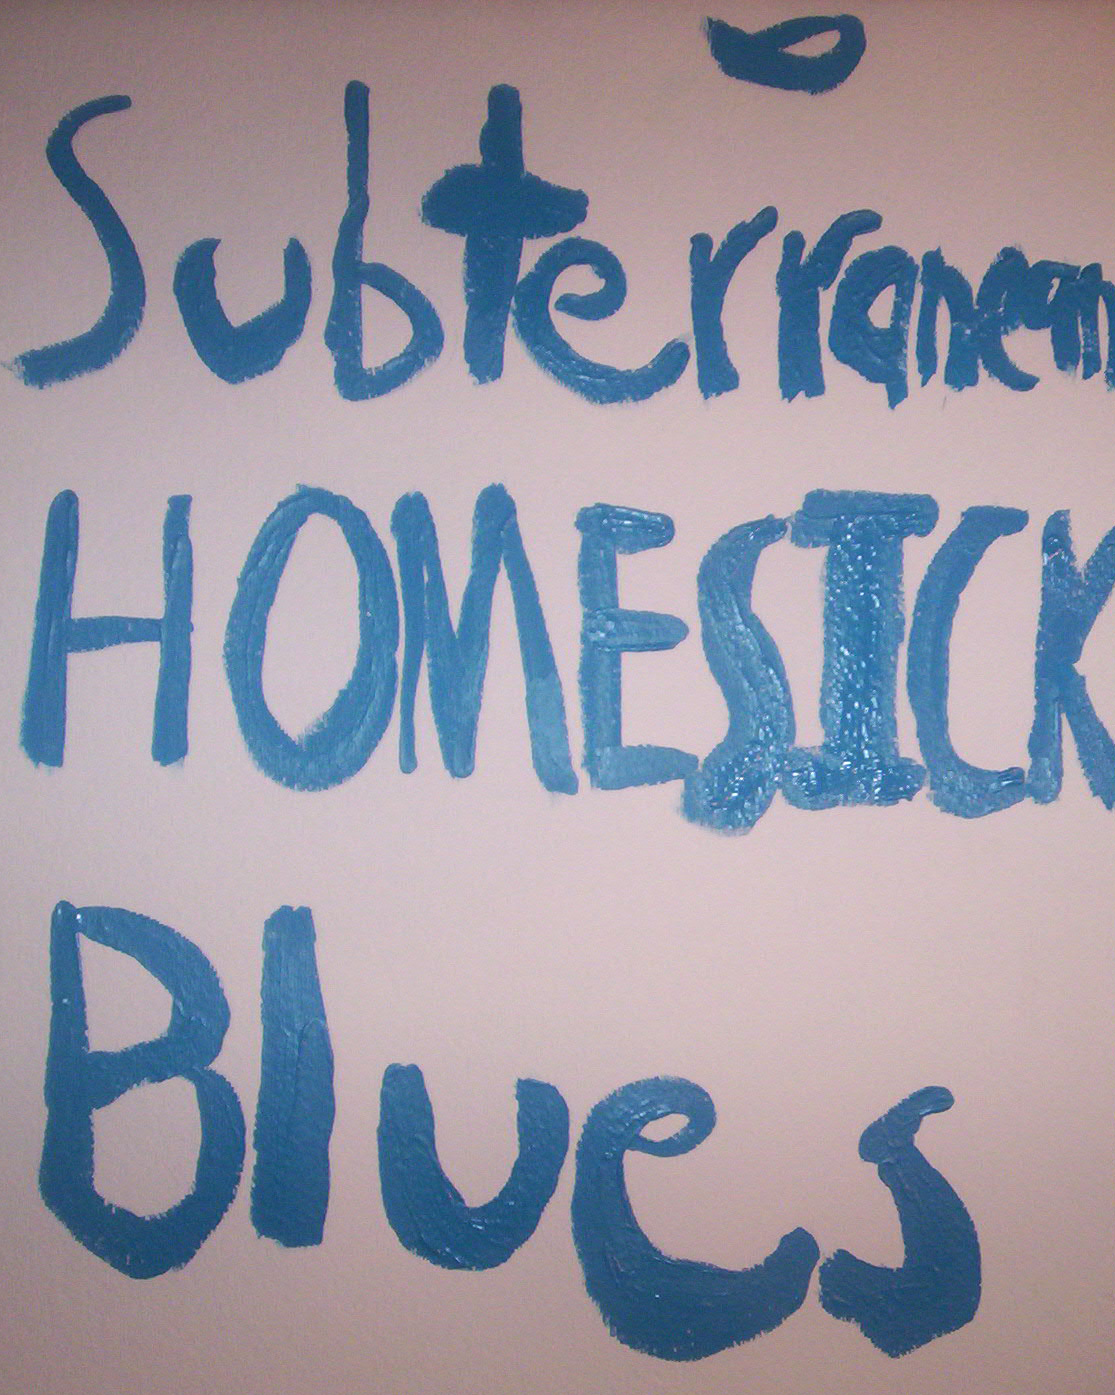 [Subterranean+Homesick+Blues.jpg]